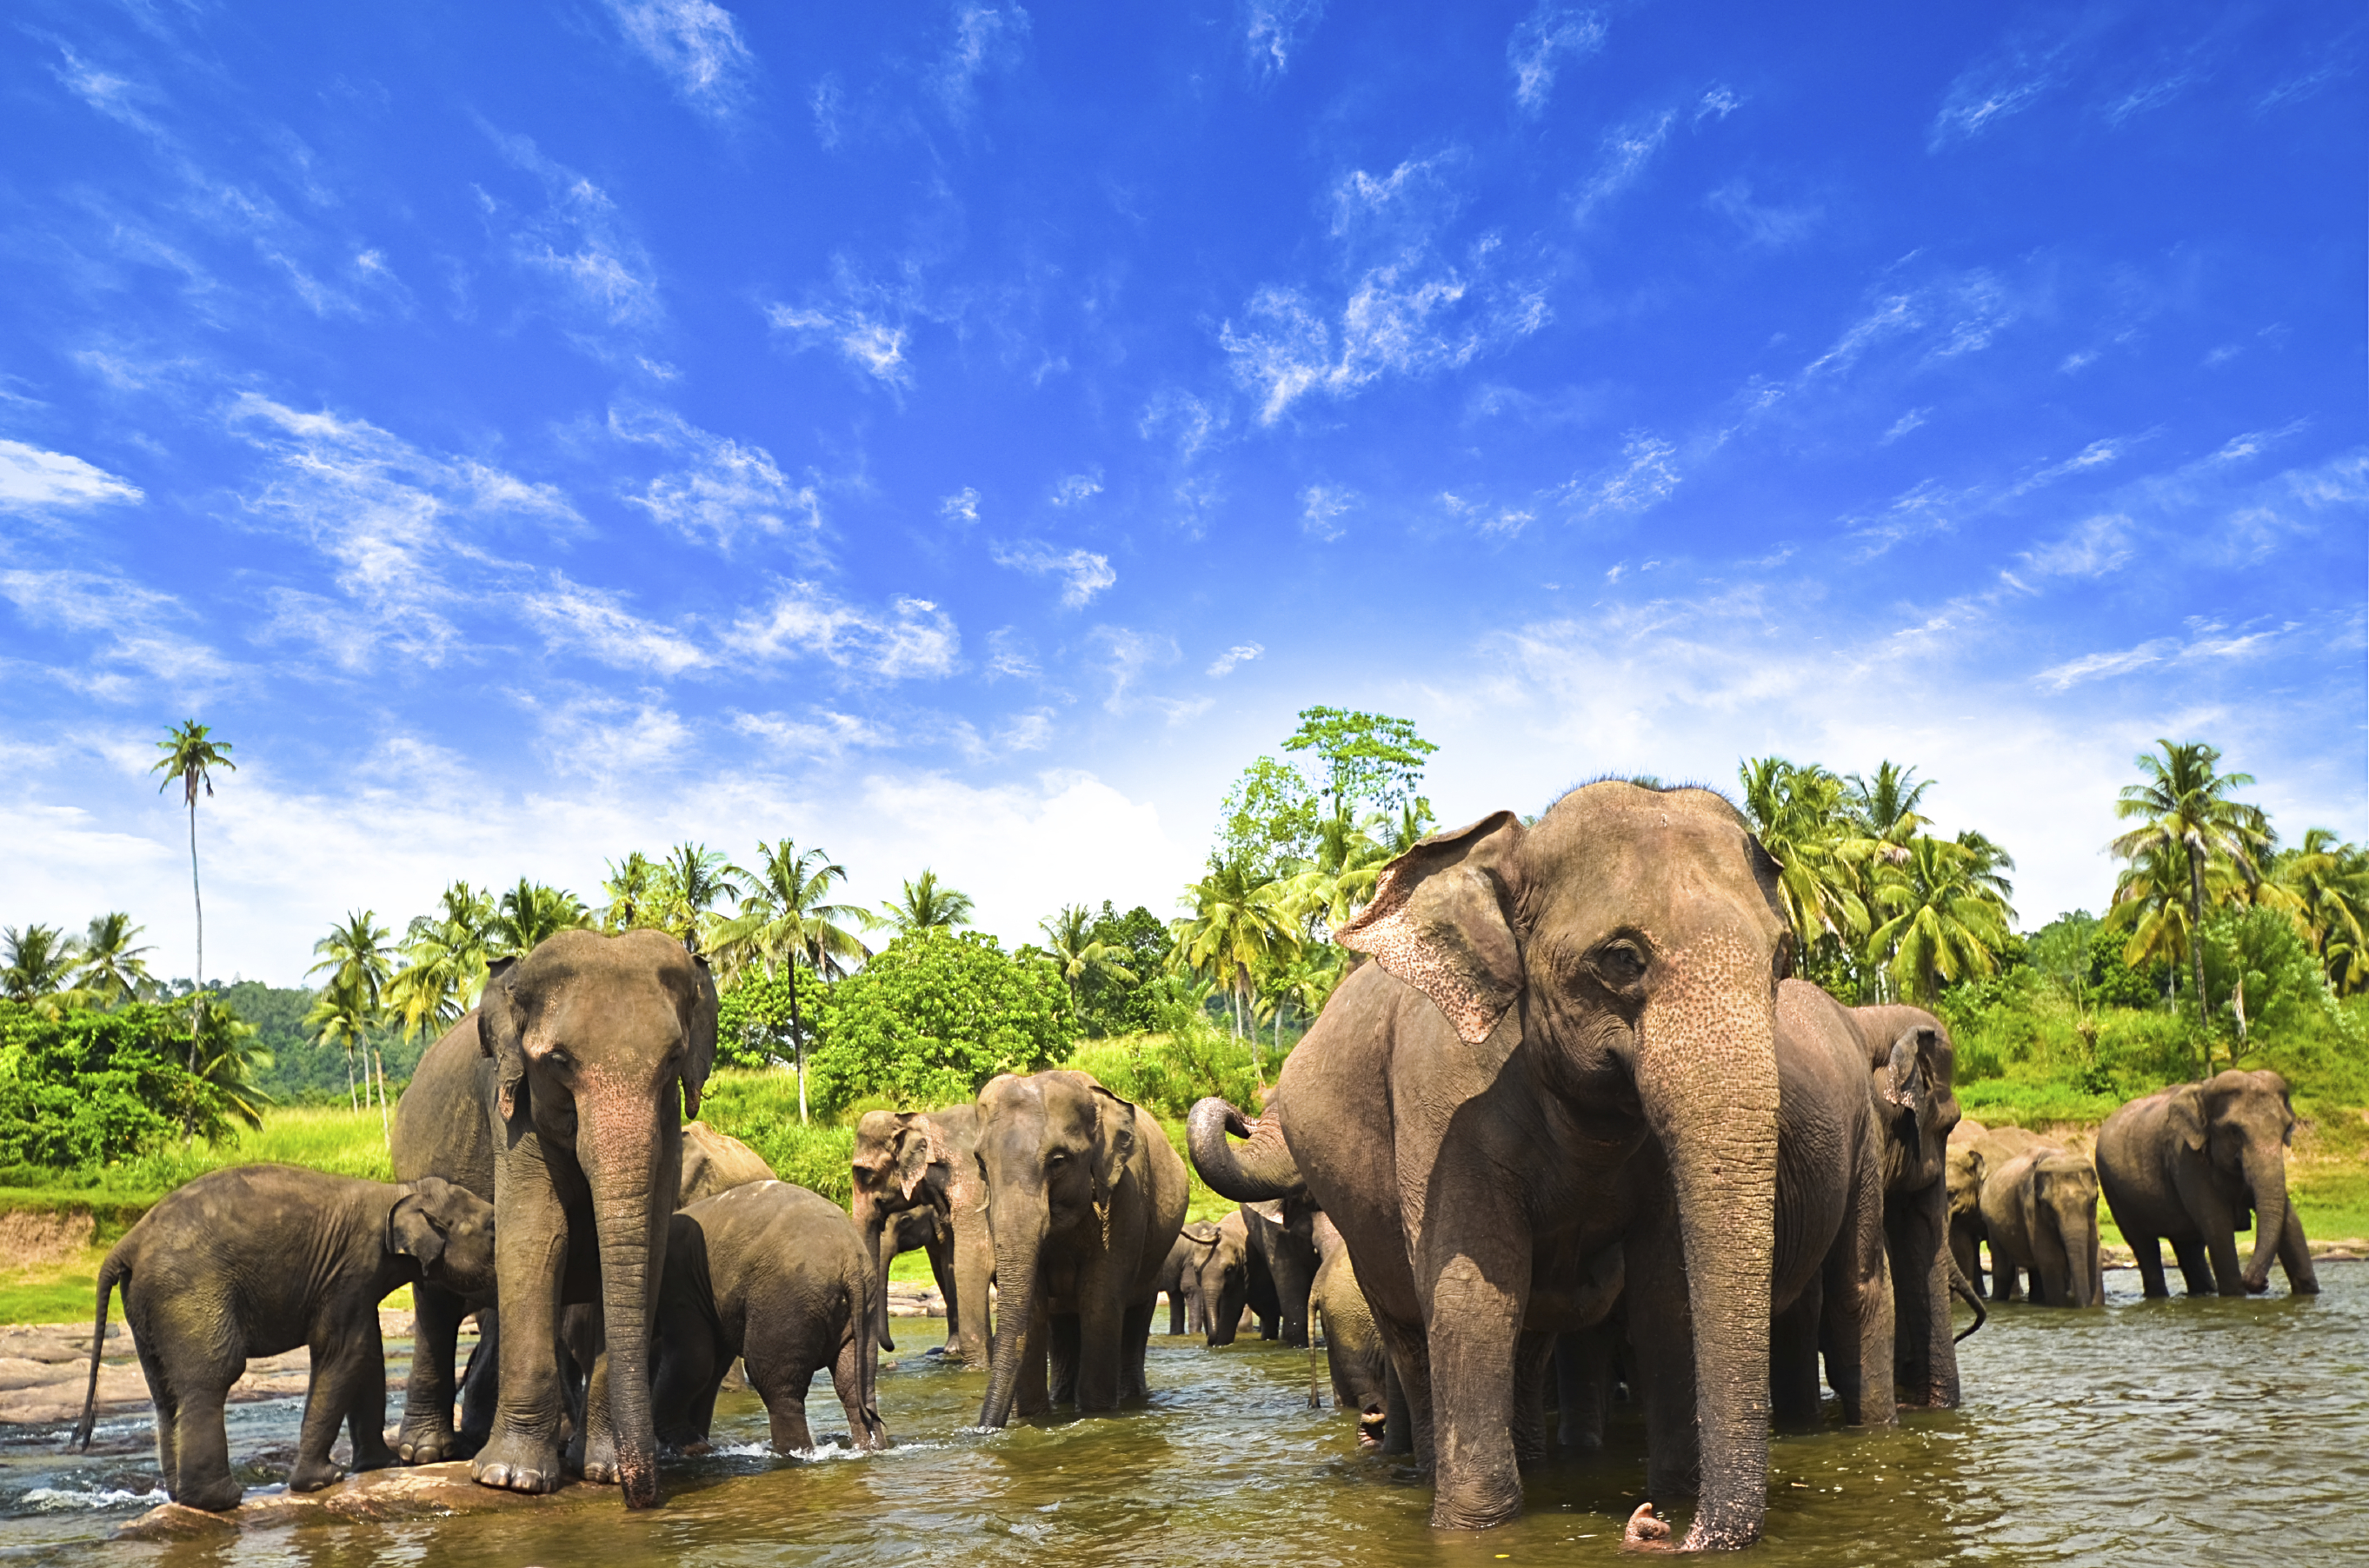 Sri Lanka Wallpaper - Elephants In Sri Lanka , HD Wallpaper & Backgrounds